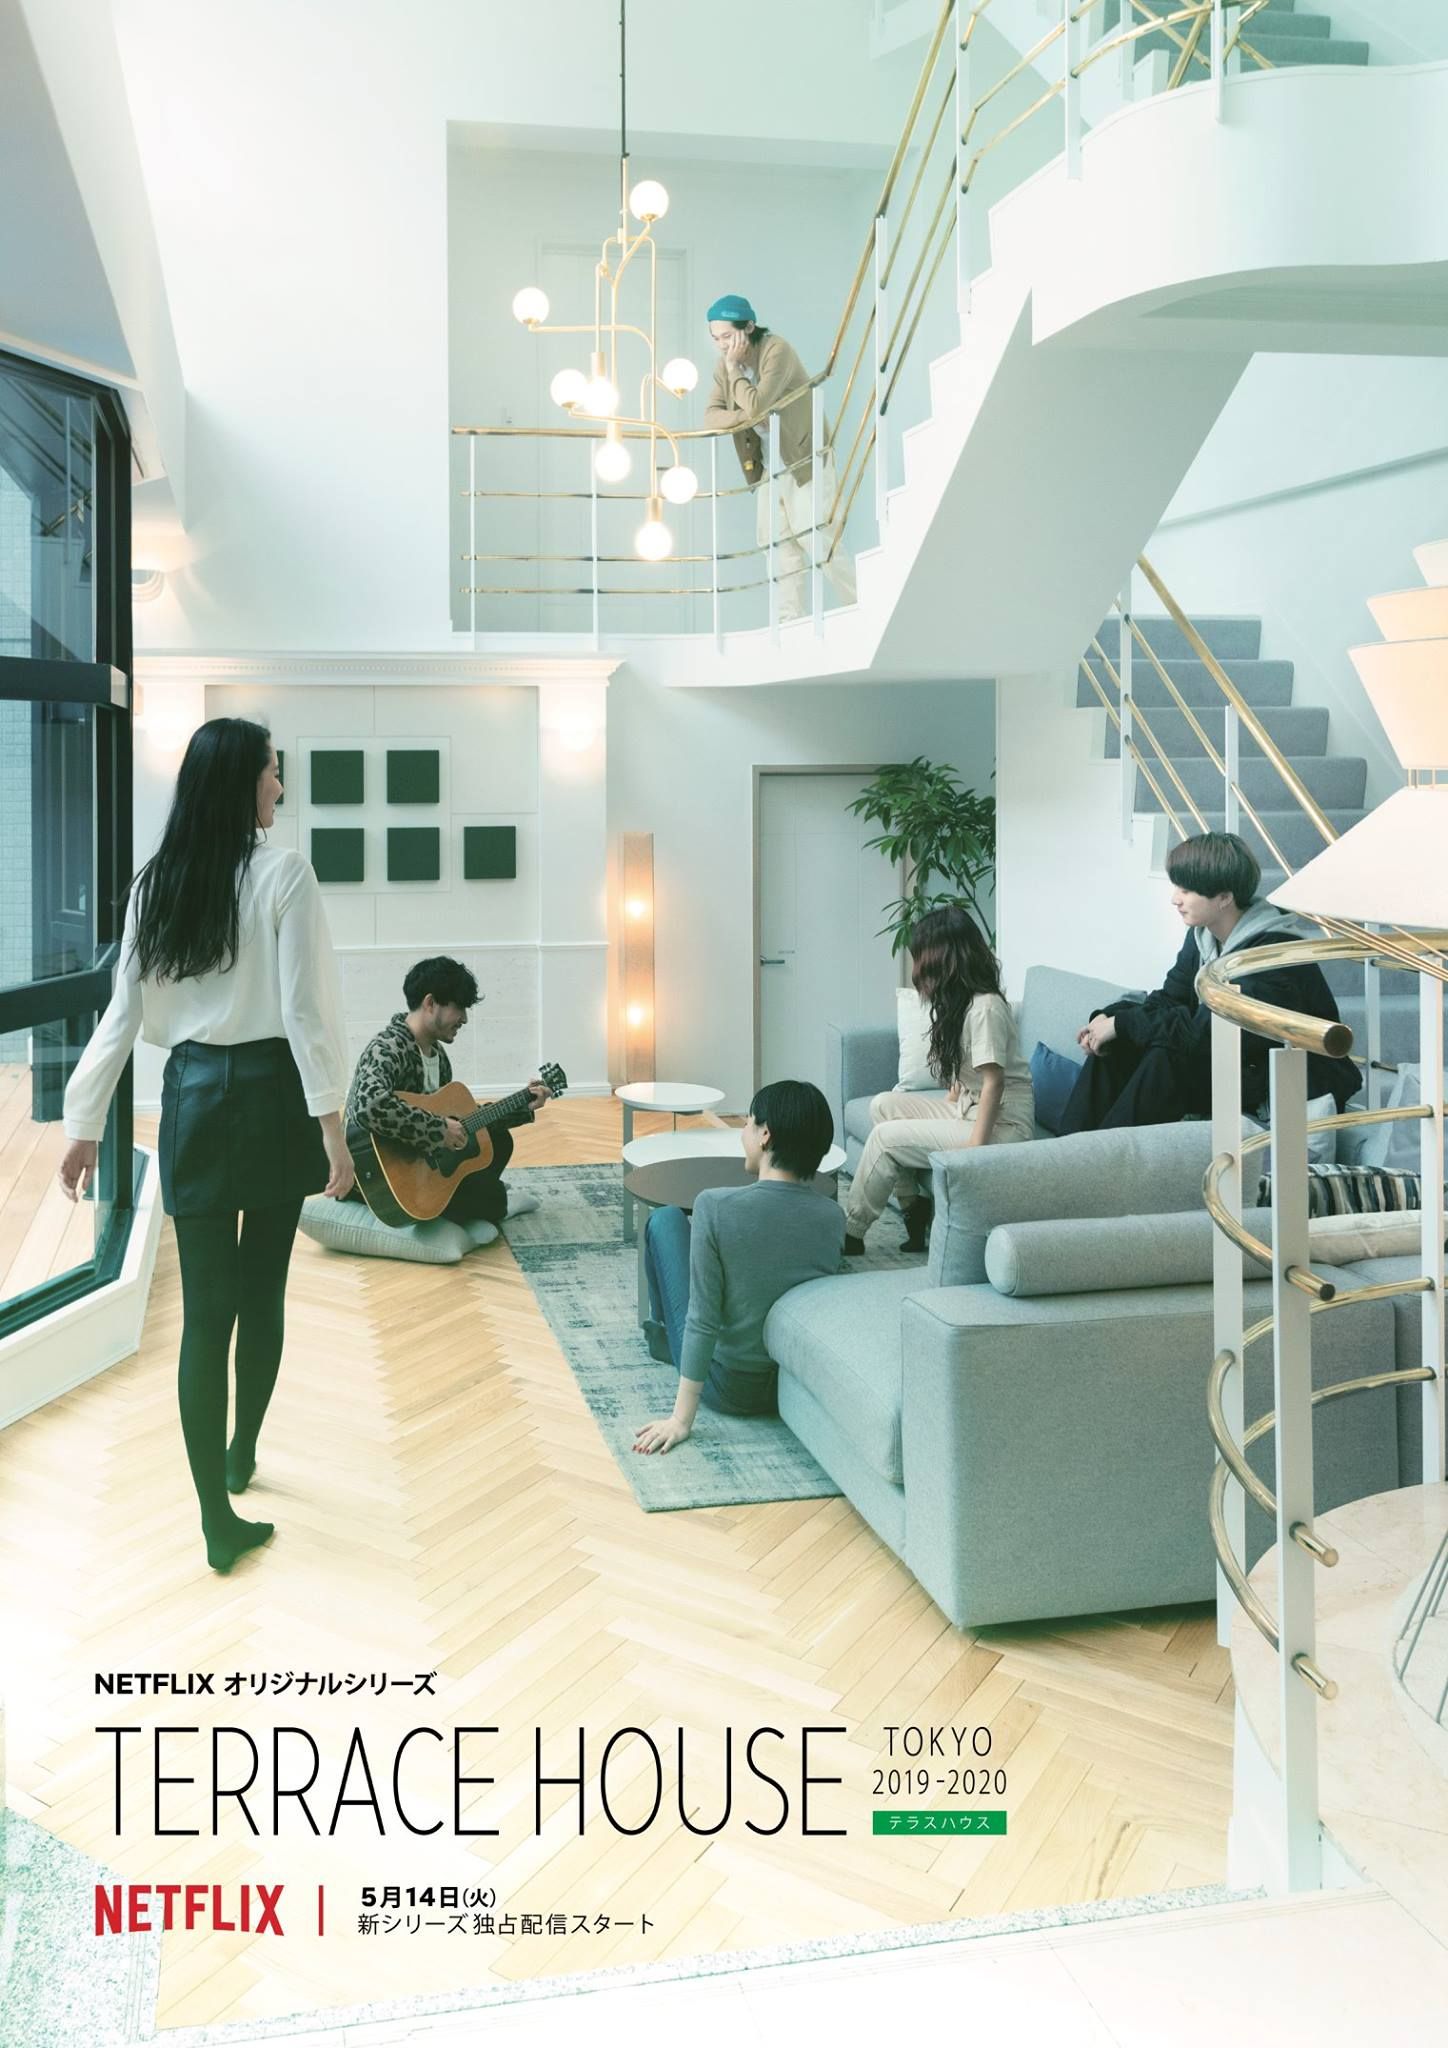 drama manga - Terrace House Tokyo 2019-2020